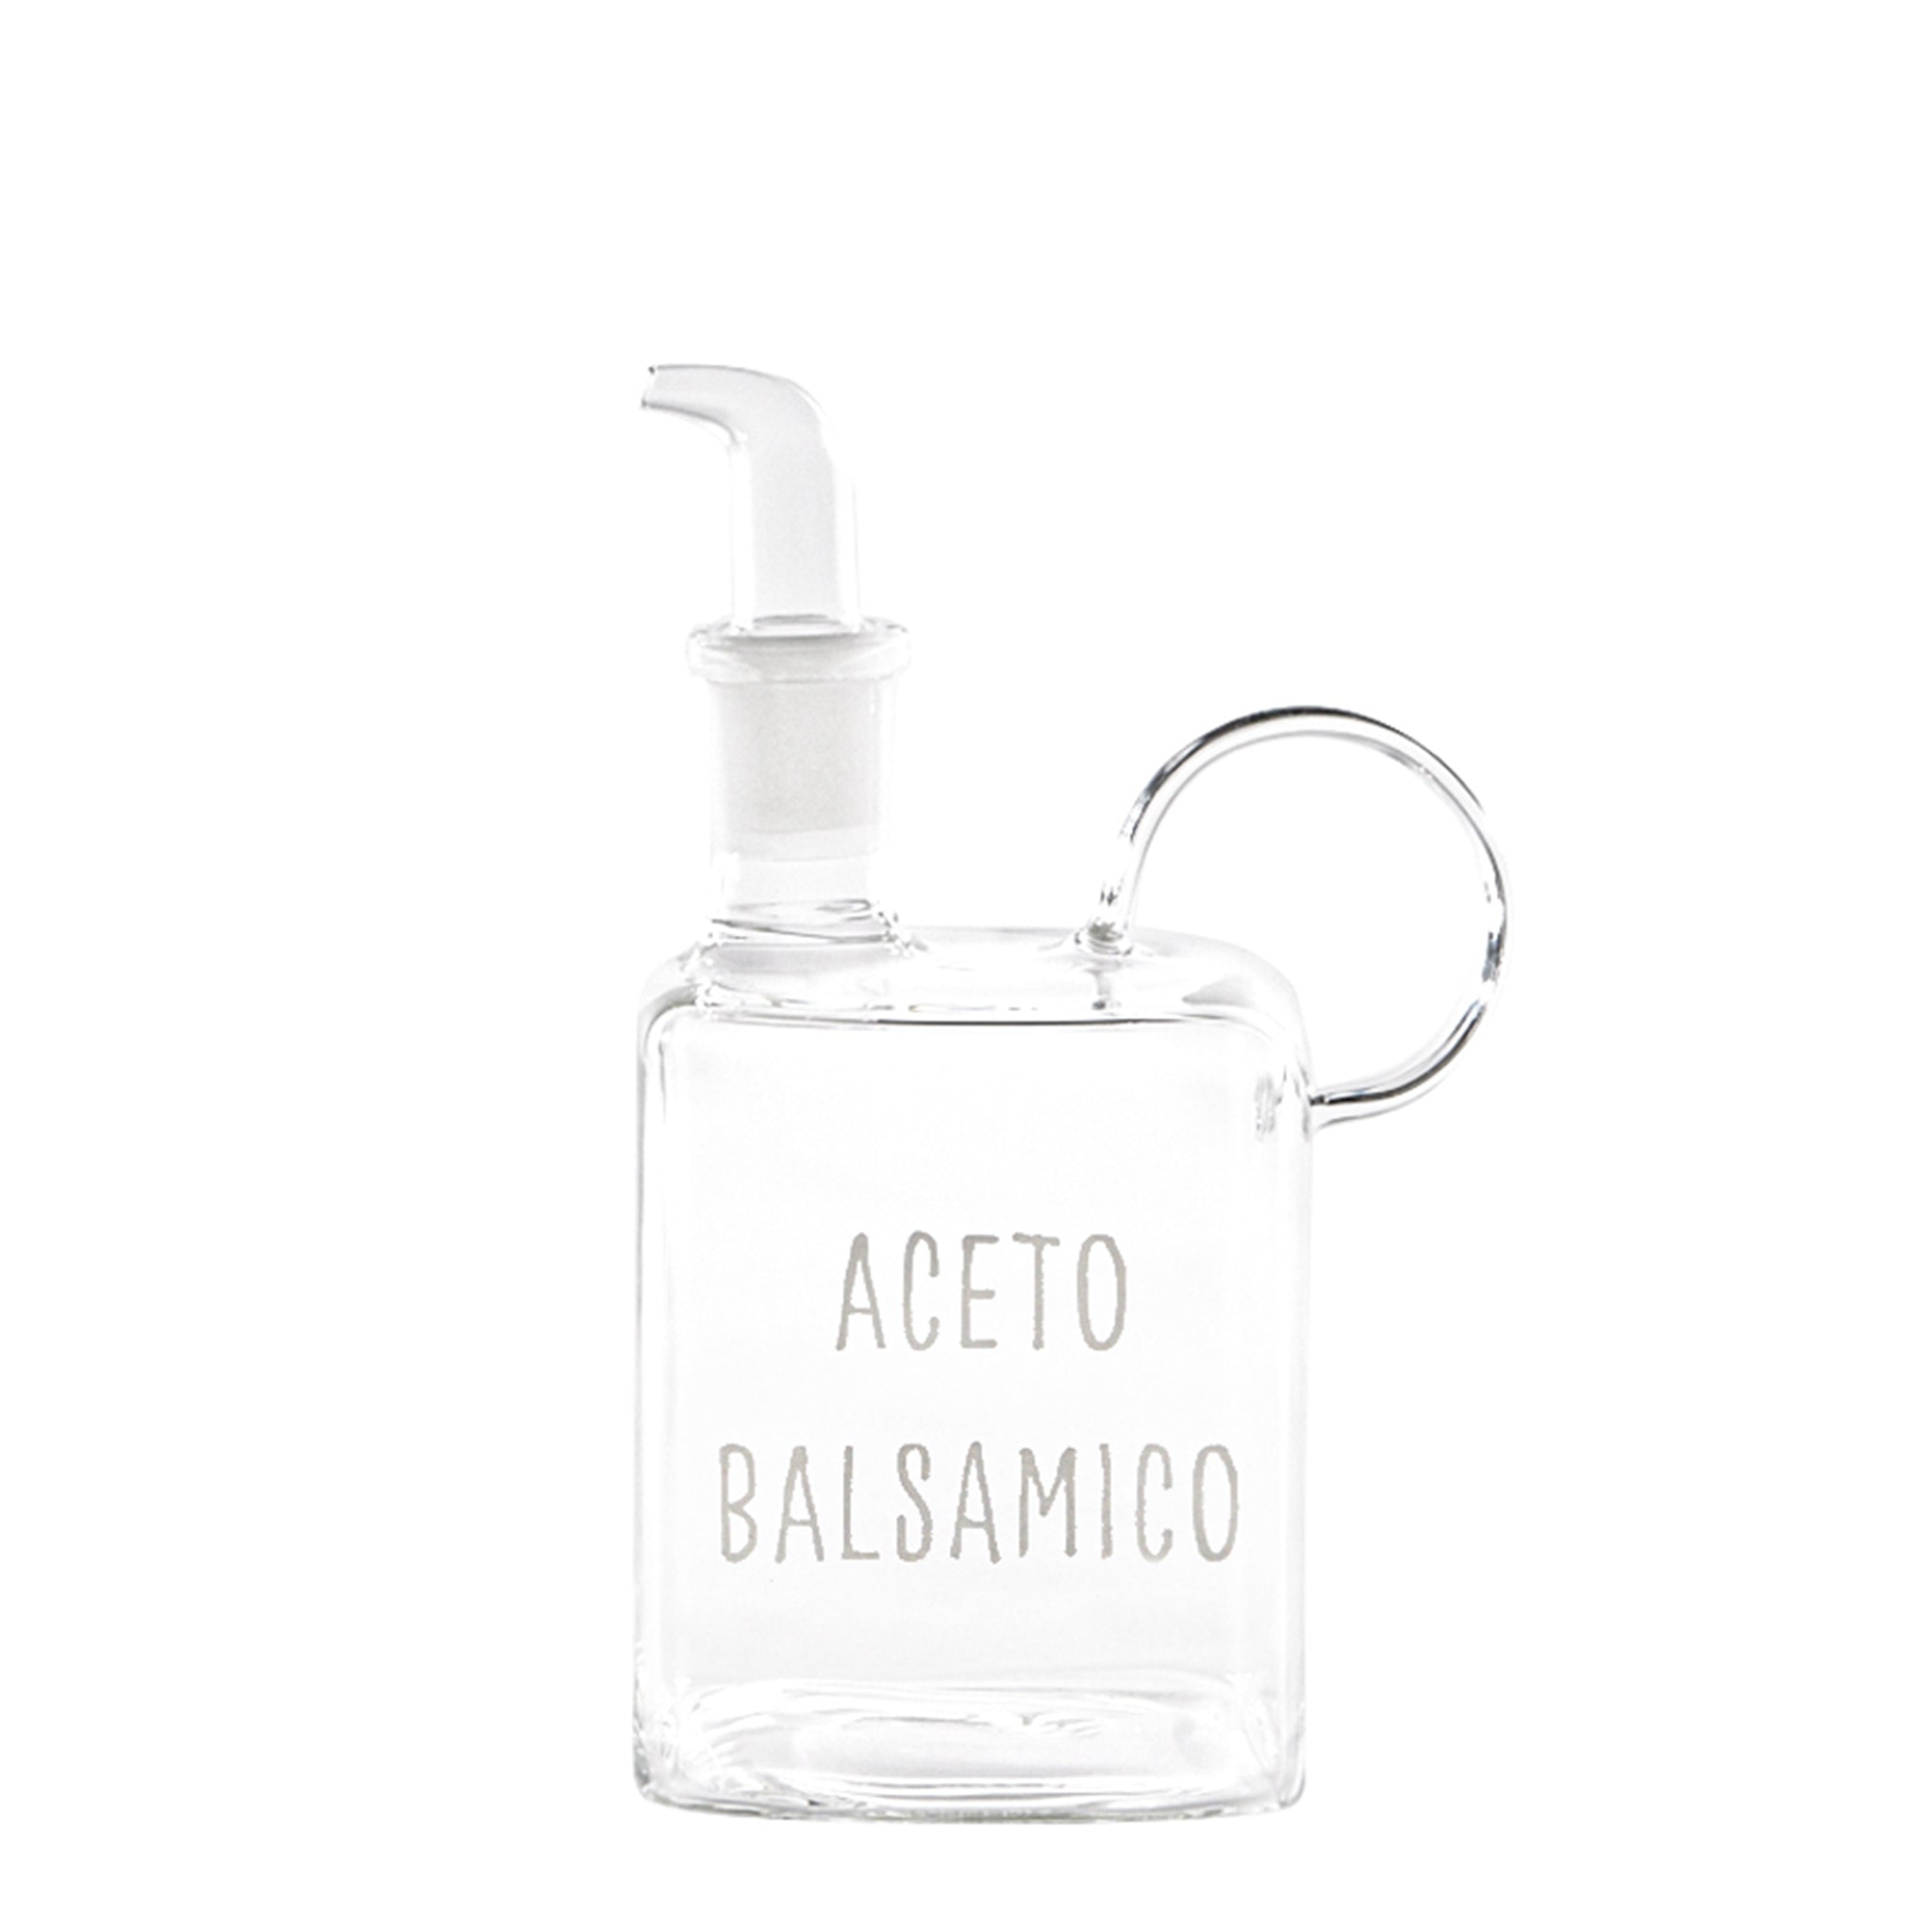 Essigflasche "Aceto Balsamico" 400ml